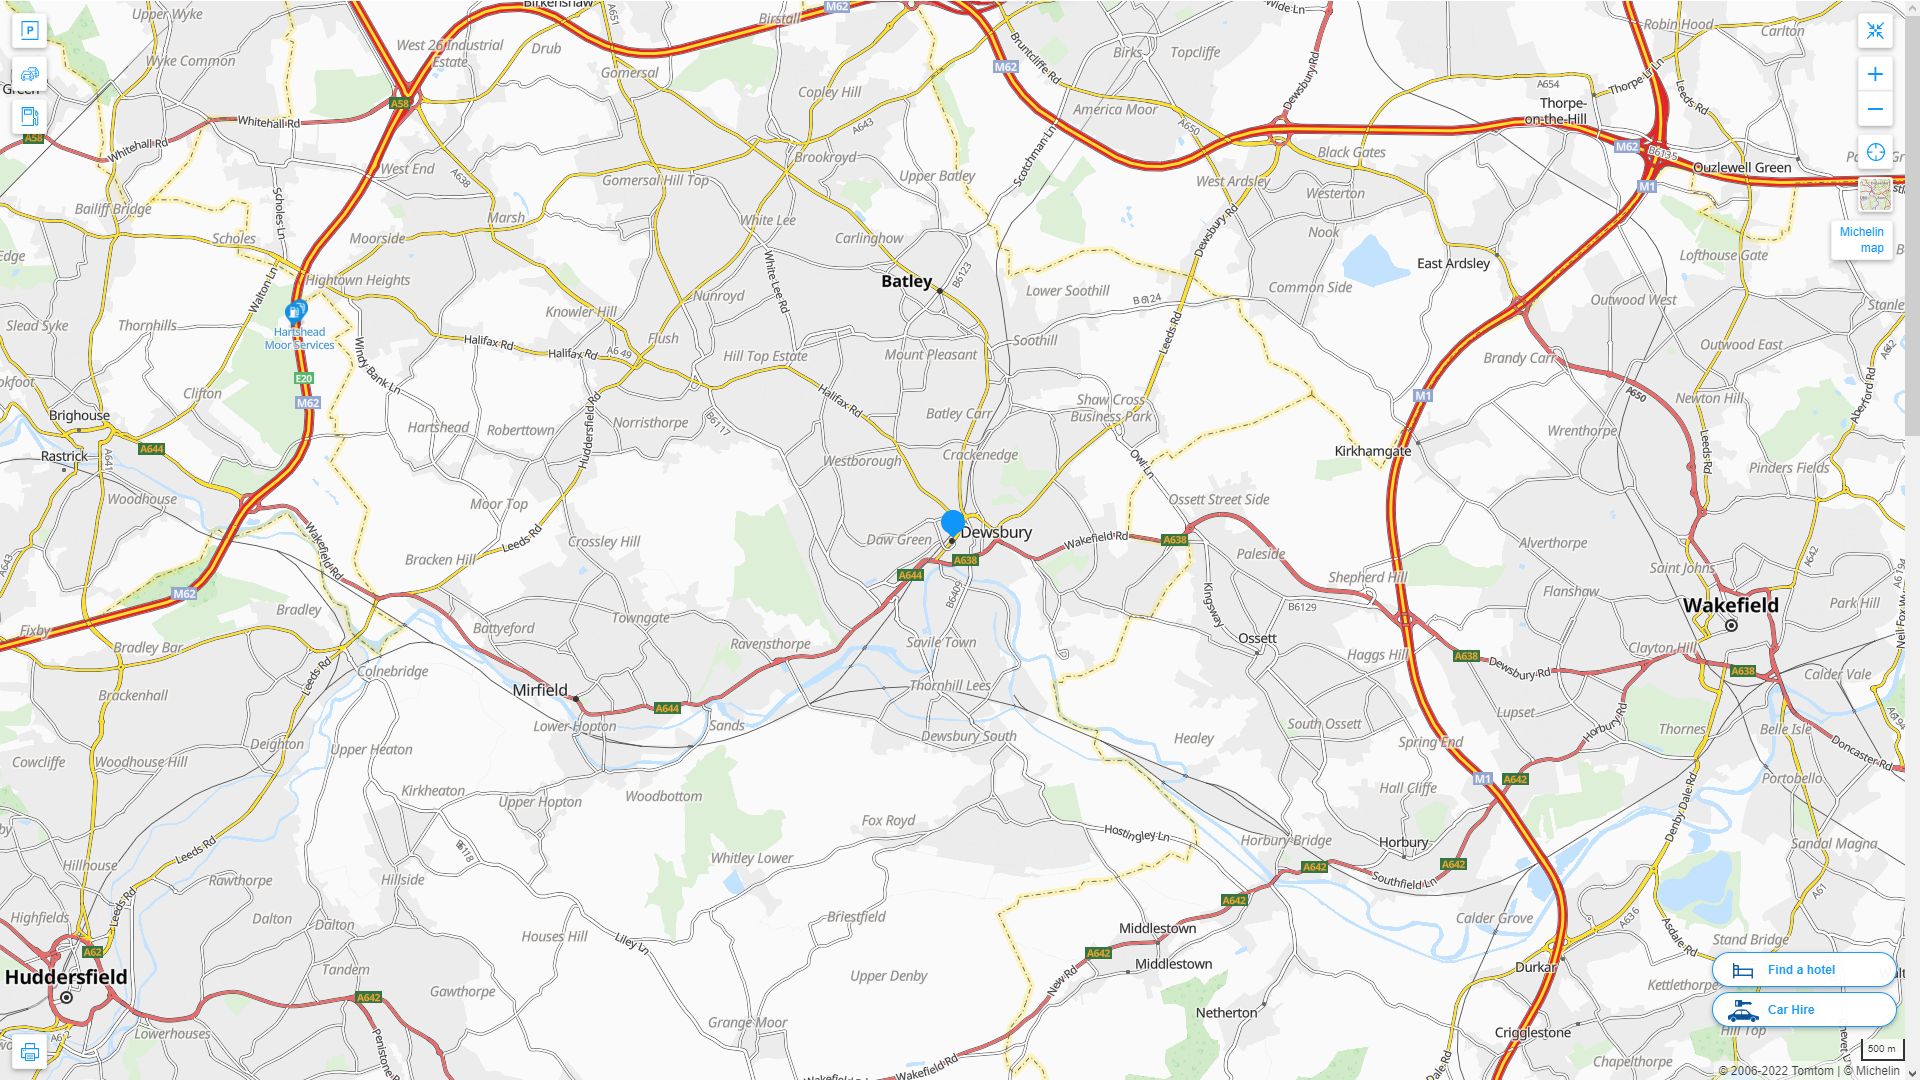 Dewsbury Royaume Uni Autoroute et carte routiere